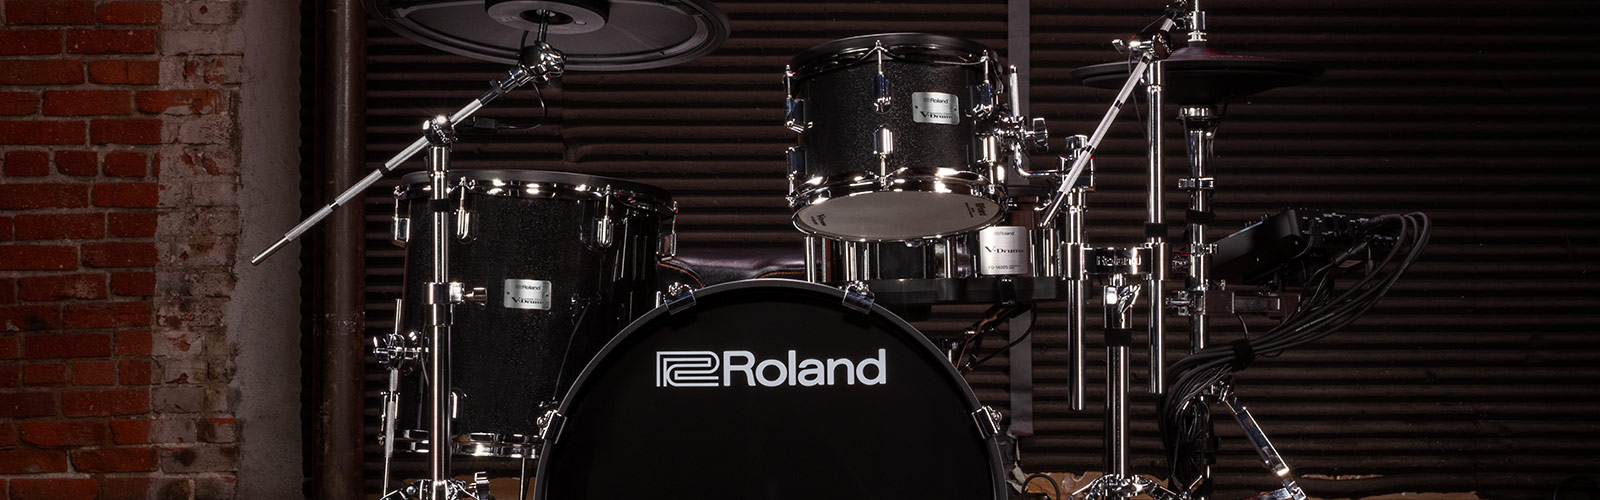 当店では、4/22(月)～5/6(月・祝)までの期間、「Roland V-Drums プレゼントキャンペーン」を開催いたしております！G.W.にドラムを始めたい方や電子ドラムを新調したい方は必見です。ぜひこの機会にご検討ください！ CONTENTS対象モデル・キャンペーン内容お問合せ対象モデル・キャ […]